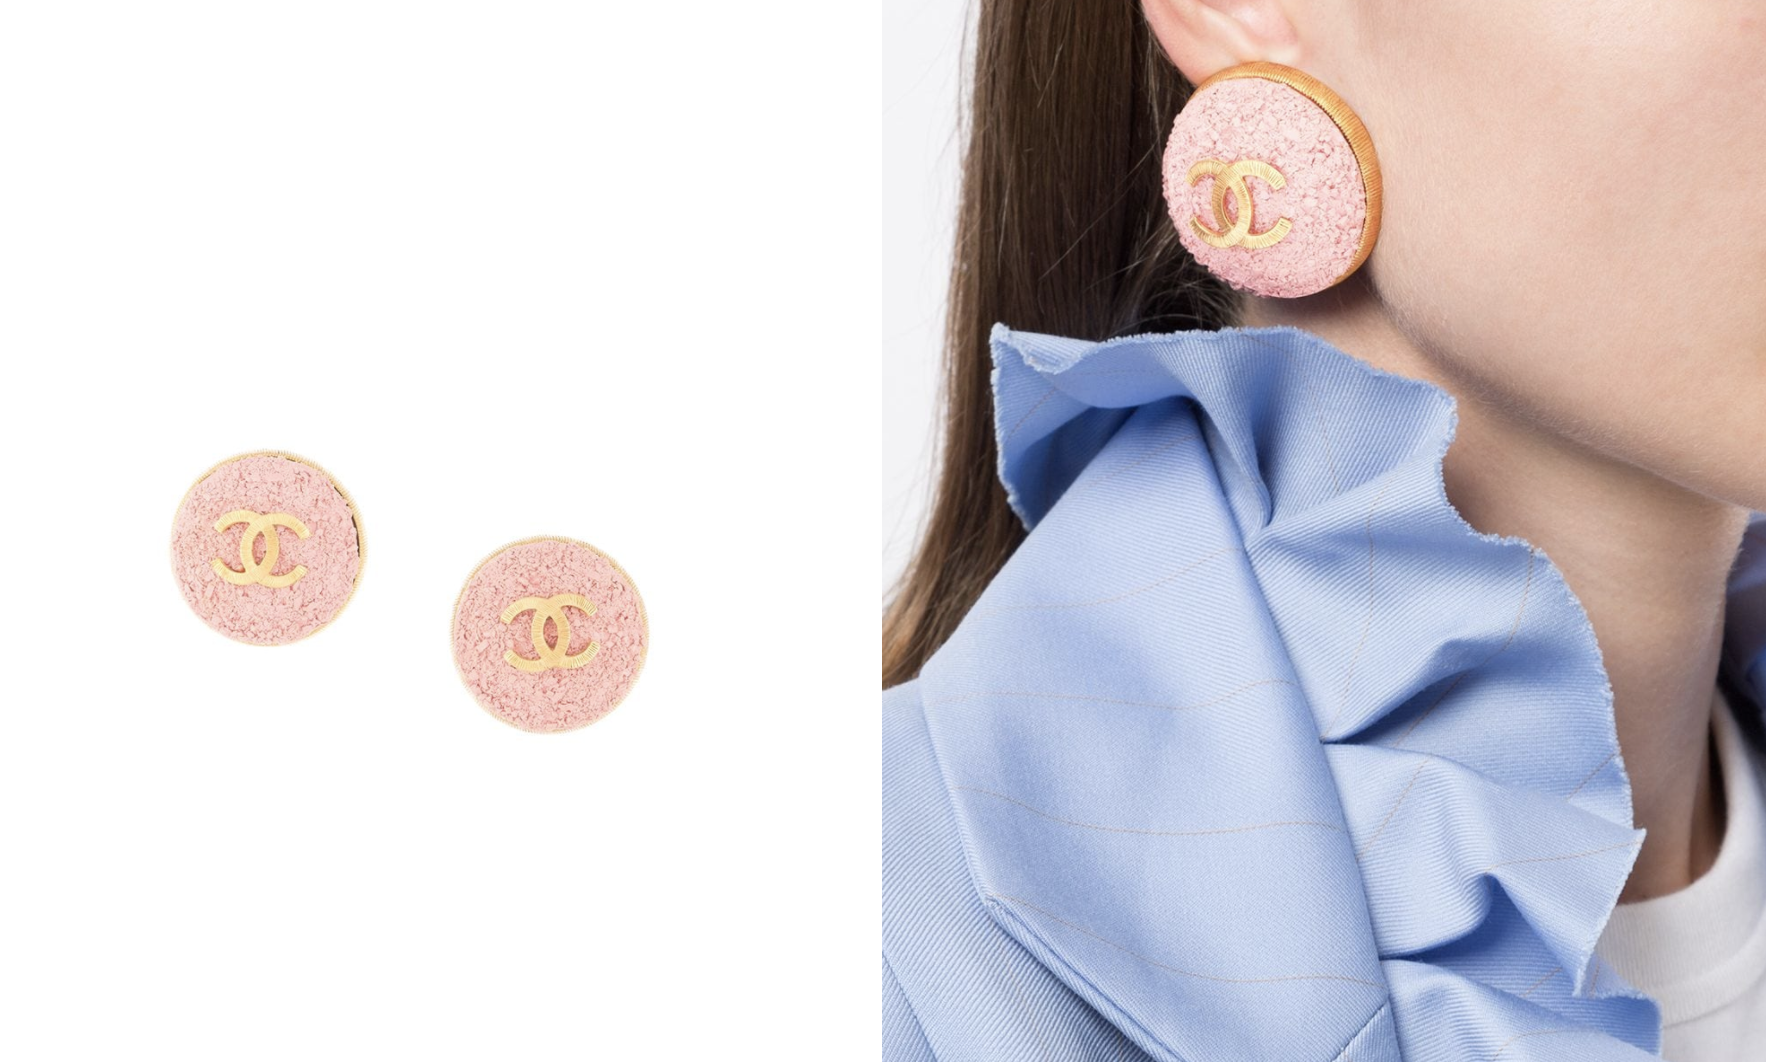 這雙Chanel耳環走浮誇路線，它用上大小不一的粉紅色物料來做成耳環的主要設計，圓形外邊和CC logo同樣使用了間條設計去突顯整對耳環的奢華感覺。這雙耳環的尺寸比一般耳環都要大，戴上耳珠後有超強的瘦面效果！